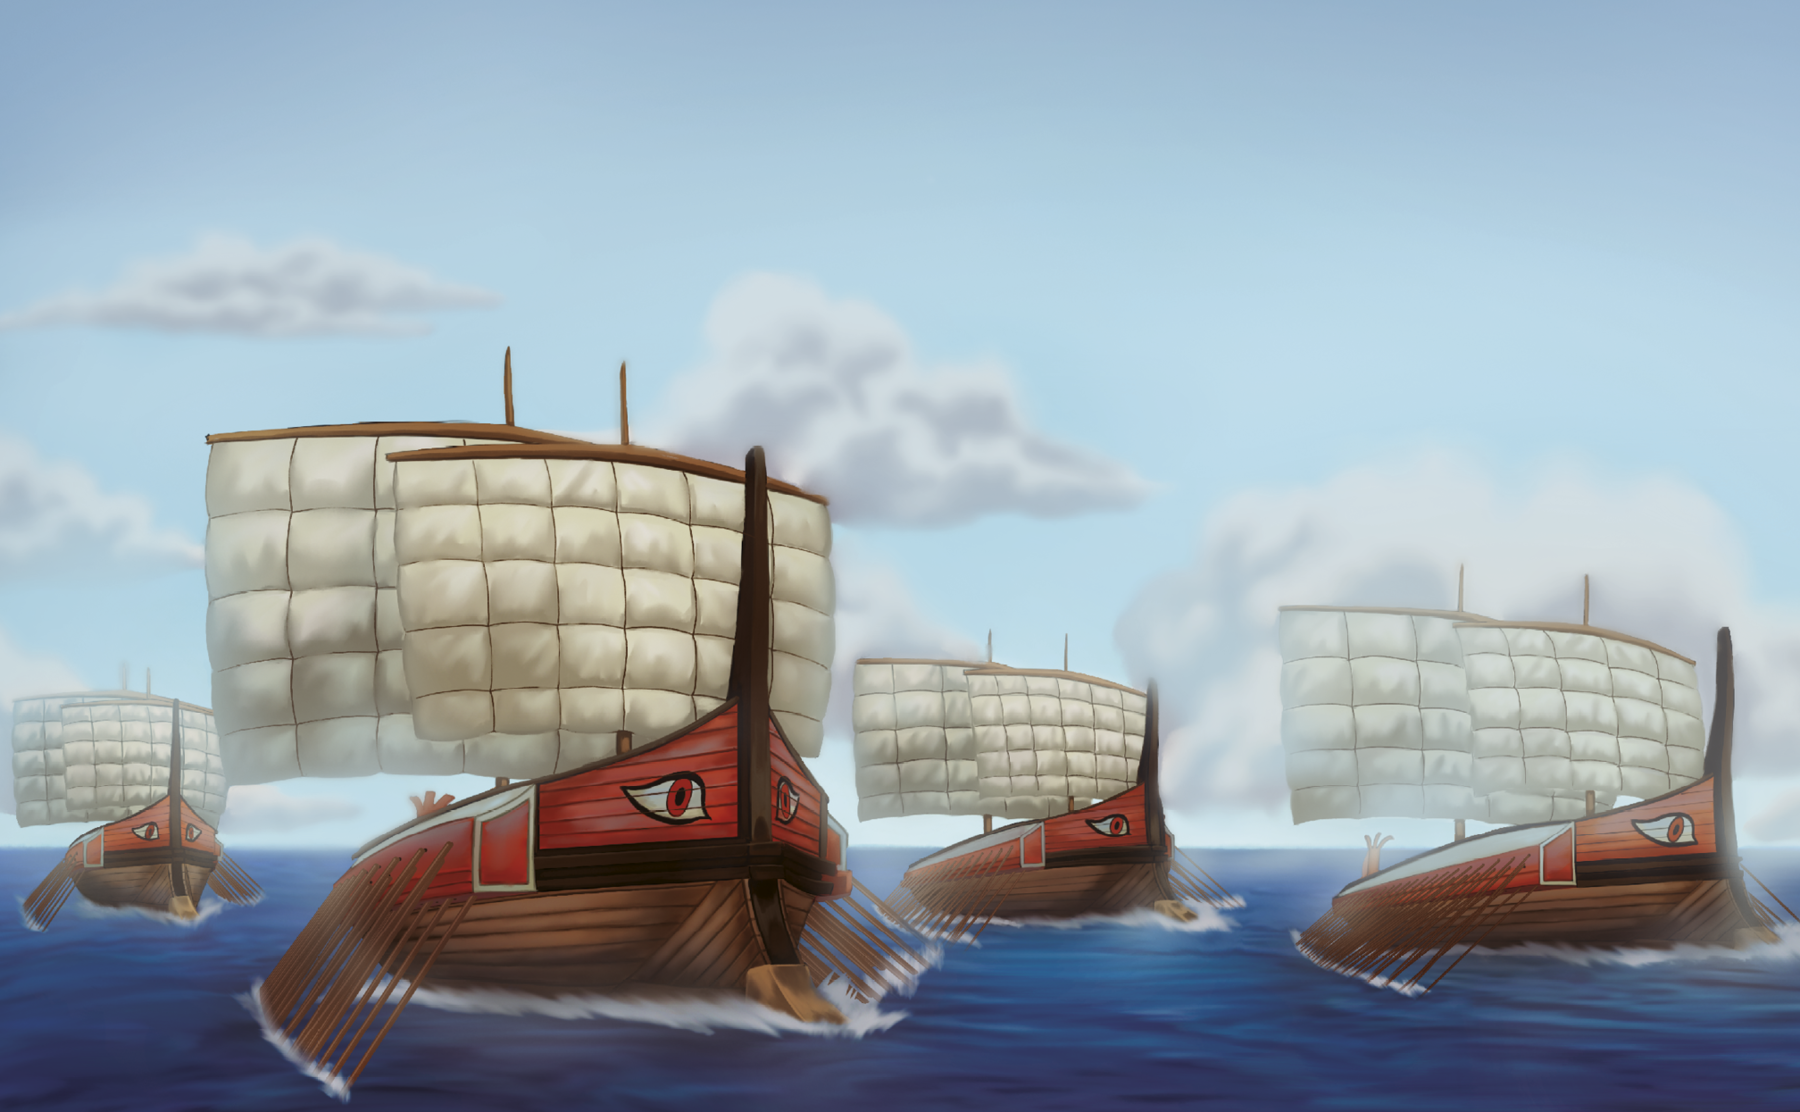 Ilustração. Quatro navios de madeira, com o casco arredondado, em alto-mar. Cada um tem duas velas, em formato retangular, e muitos remos nas laterais. Todos são decorados com olhos na proa.